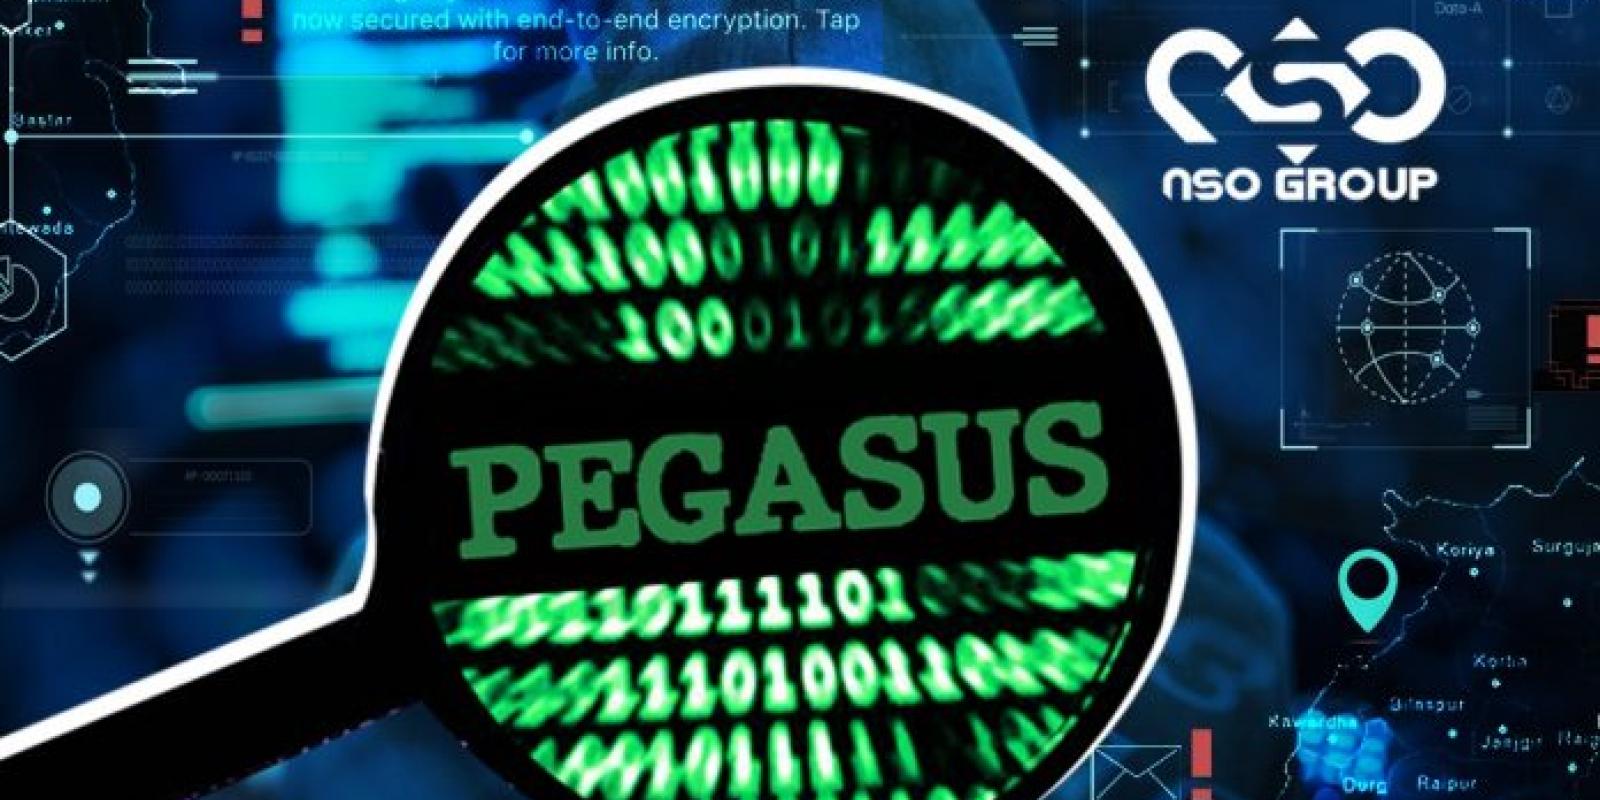 À court d'argent, les développeurs de Pegasus auraient voulu vendre leur logiciel espion